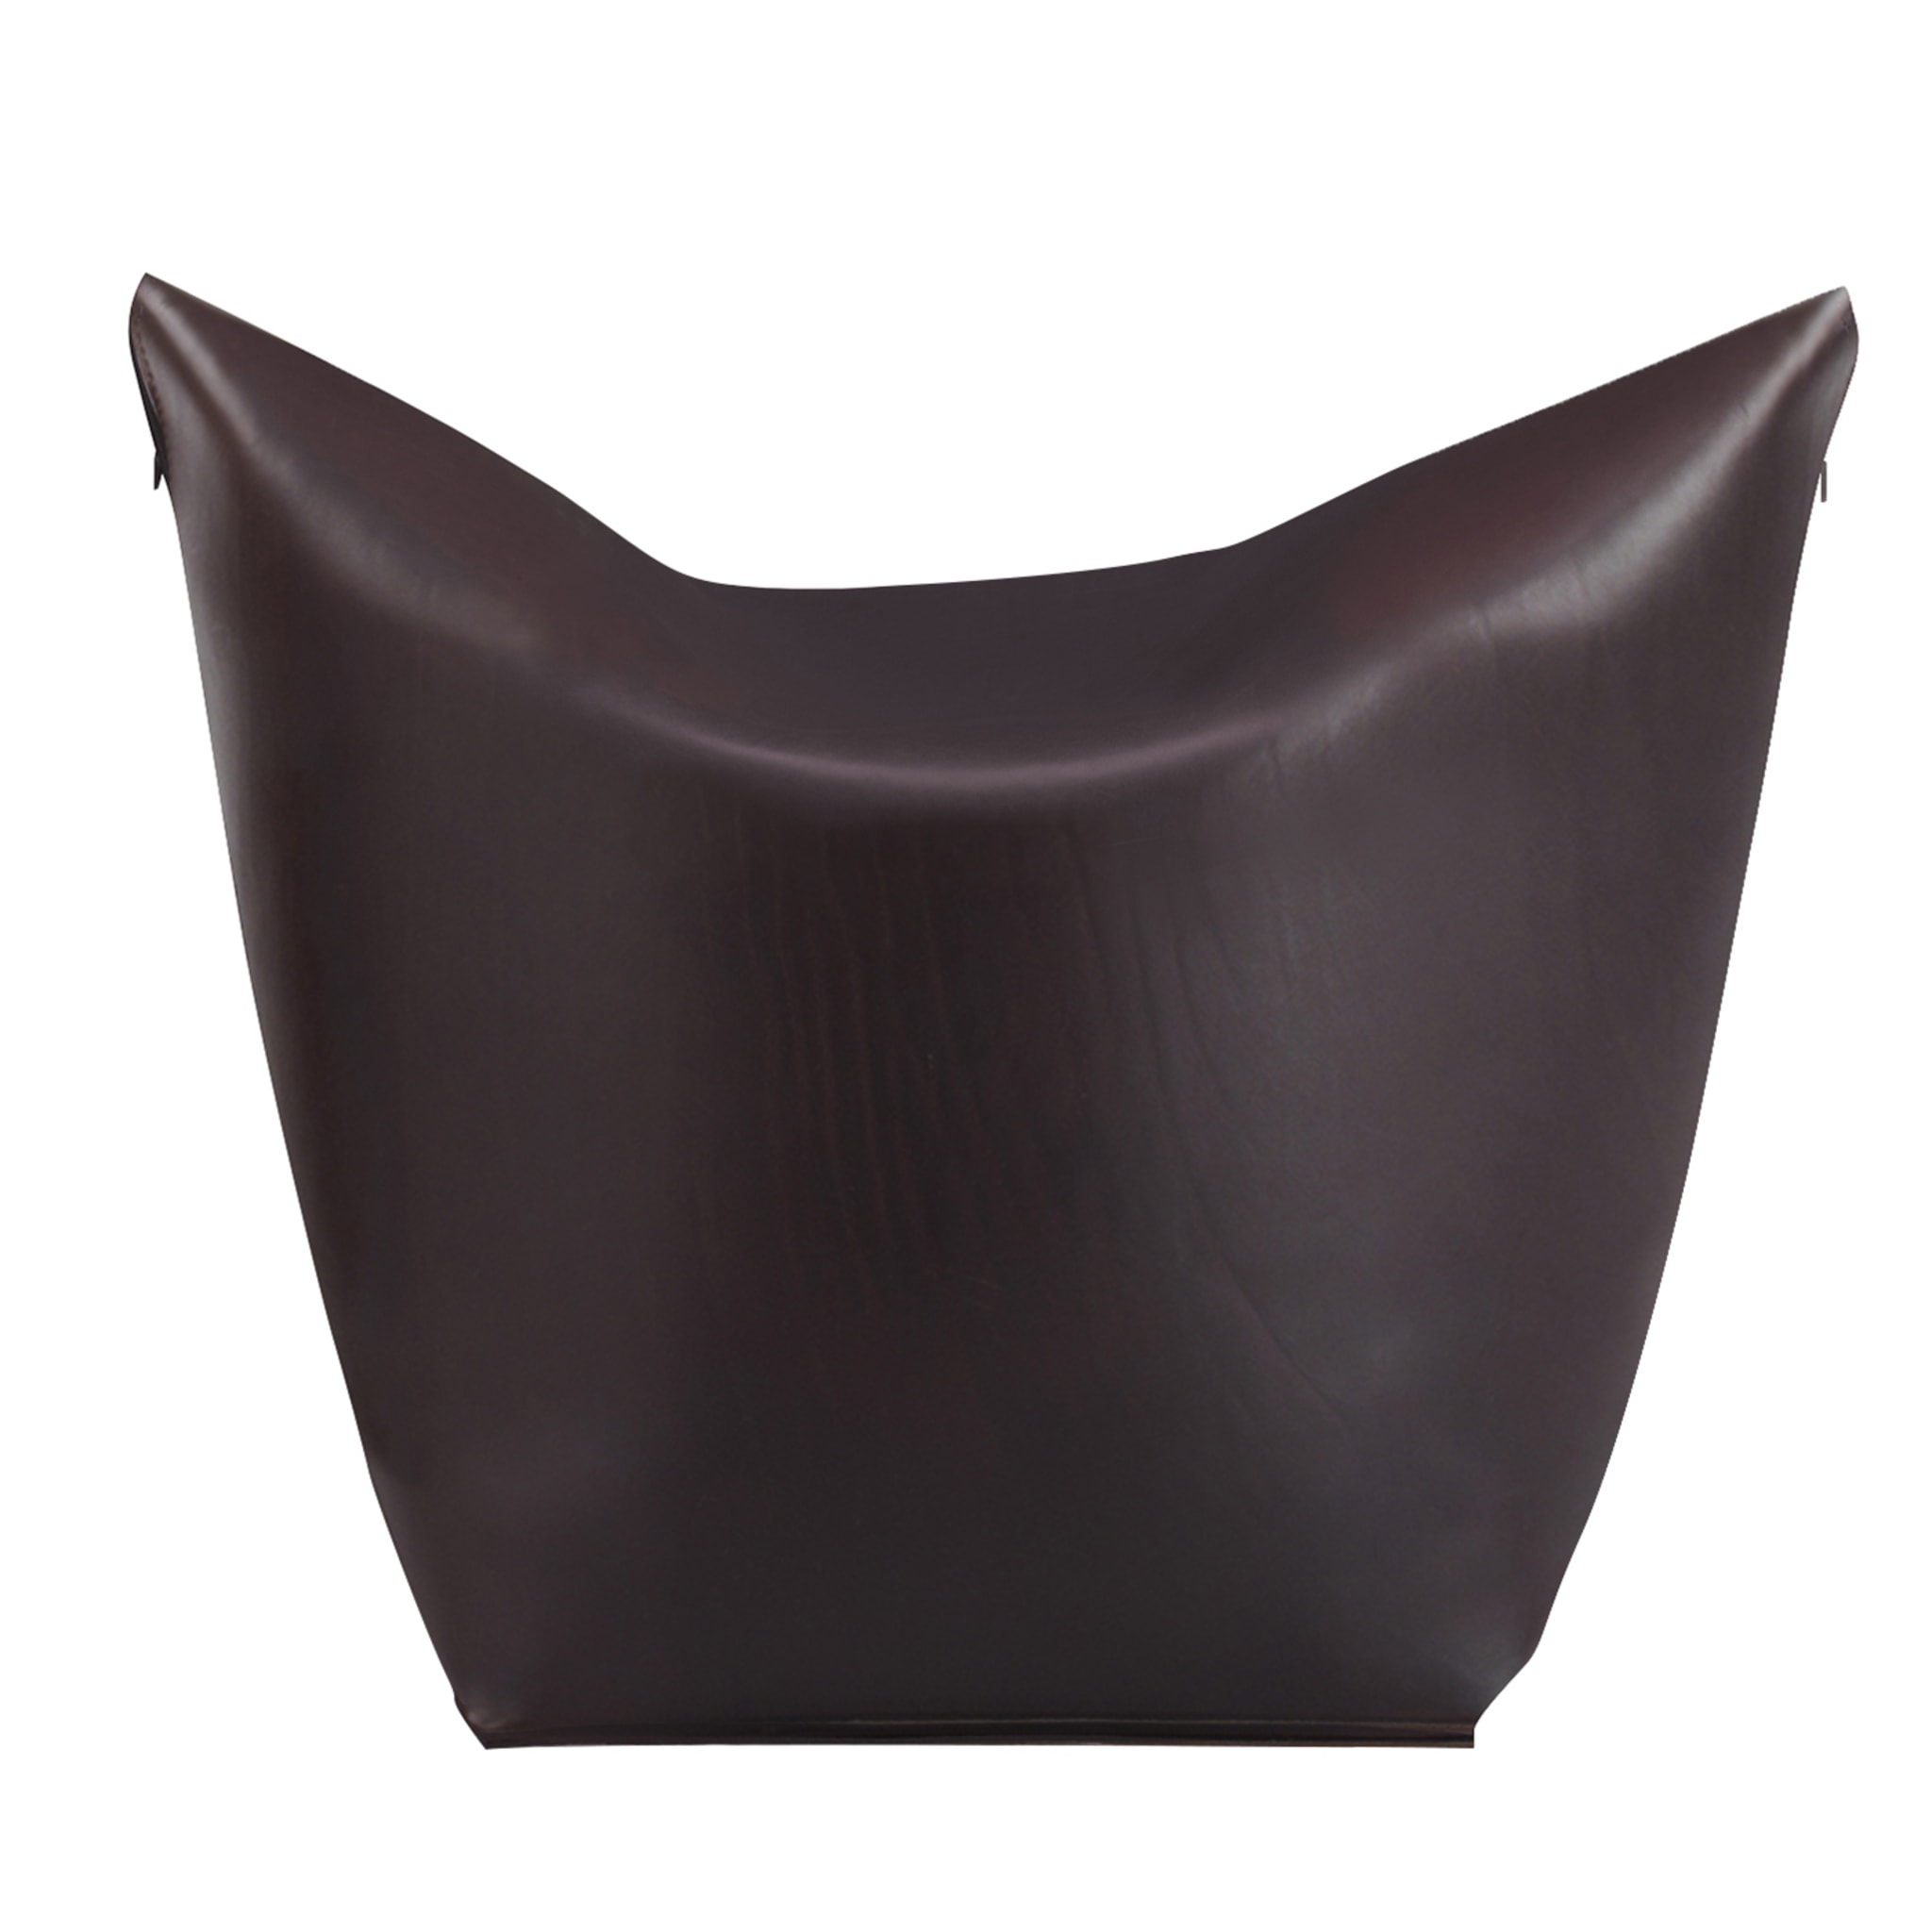 Chaise sacrée en cuir brun foncé Mao par Viola Tonucci - Vue principale